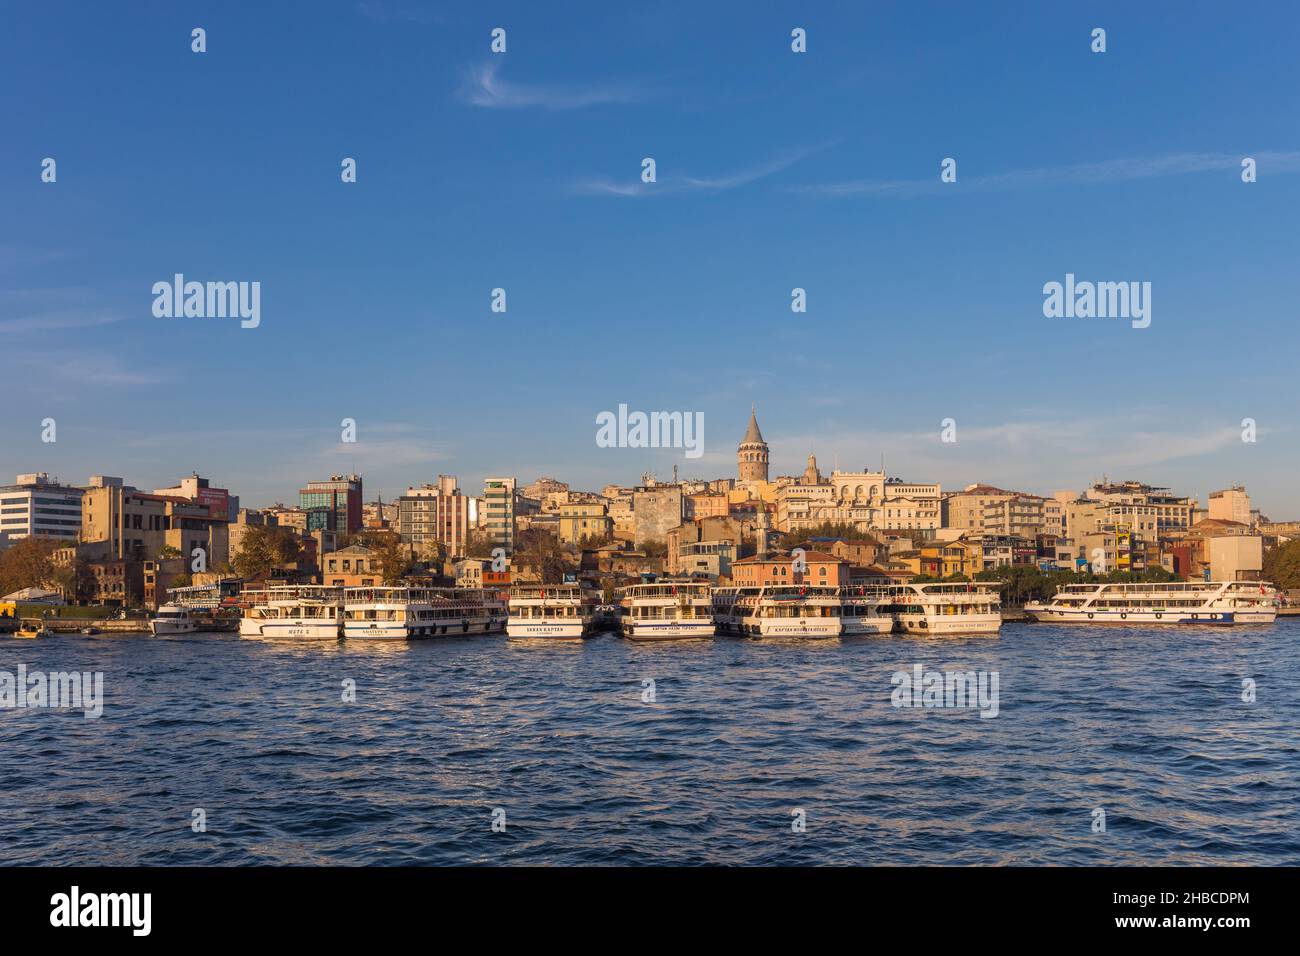 Le Bosporus, la Tour de Galata et le quartier de Beyoglu - Istanbul, Turquie Banque D'Images